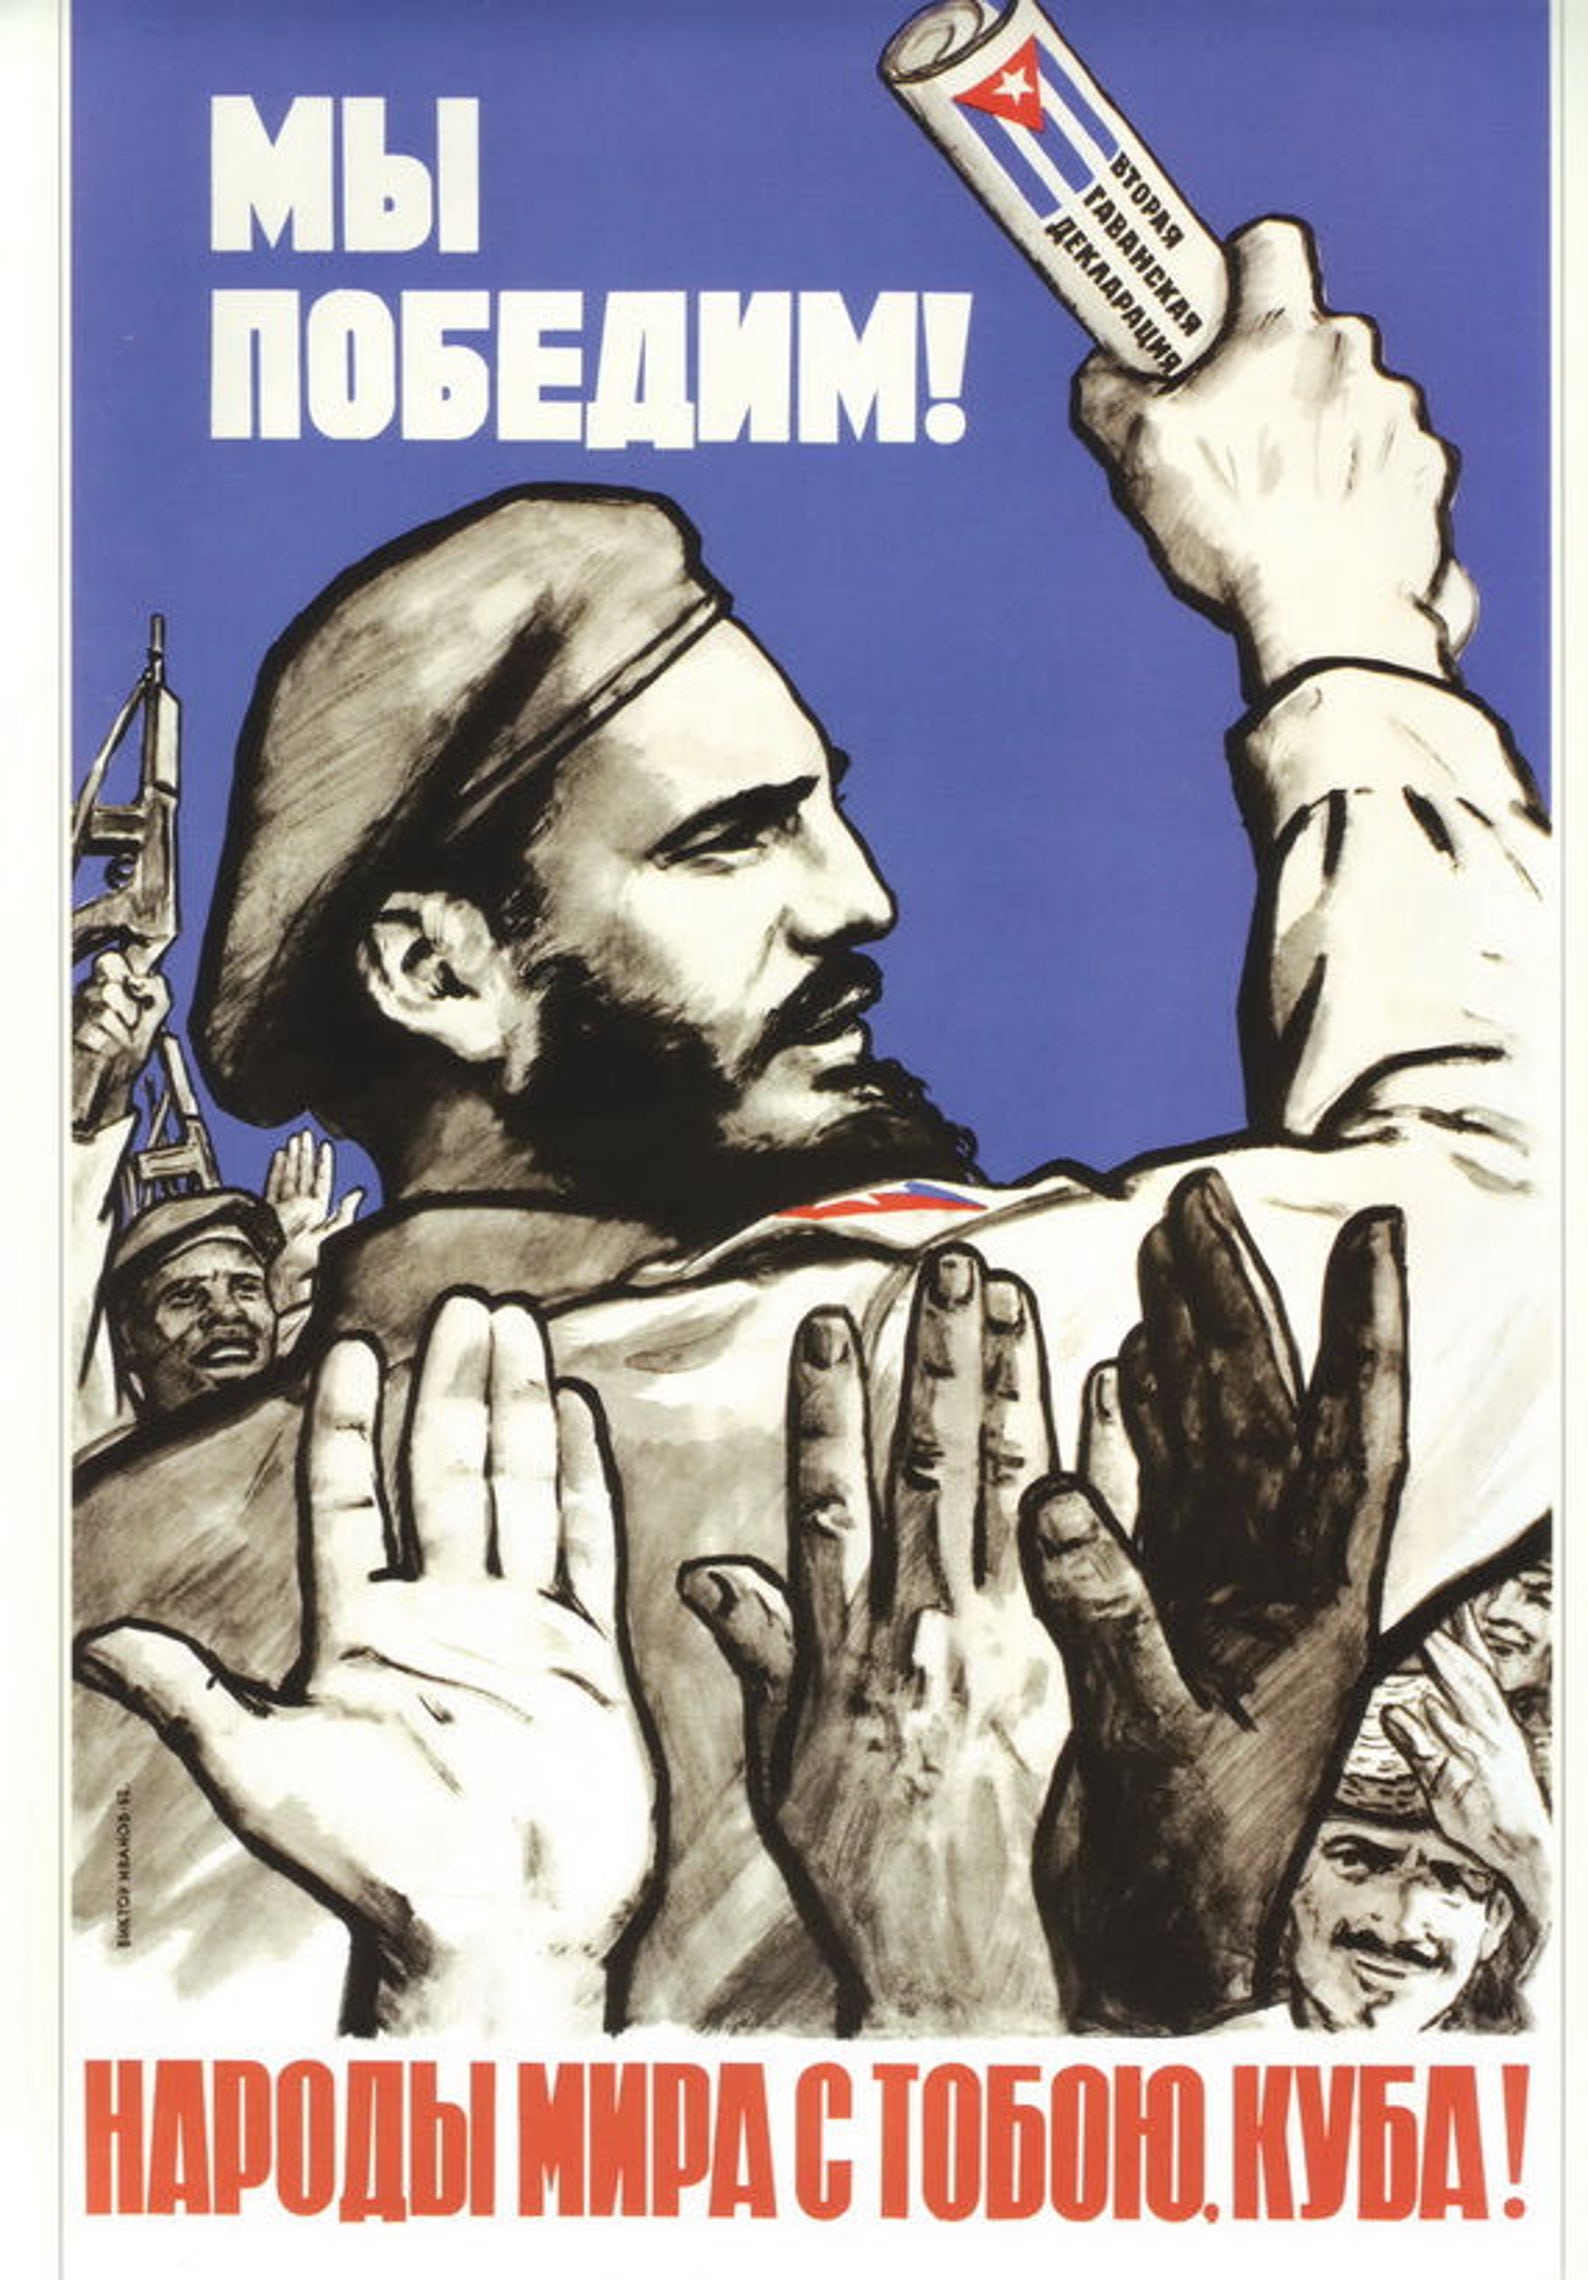 Кубинские лозунги. Кубинская революция ф Кастро плакат.